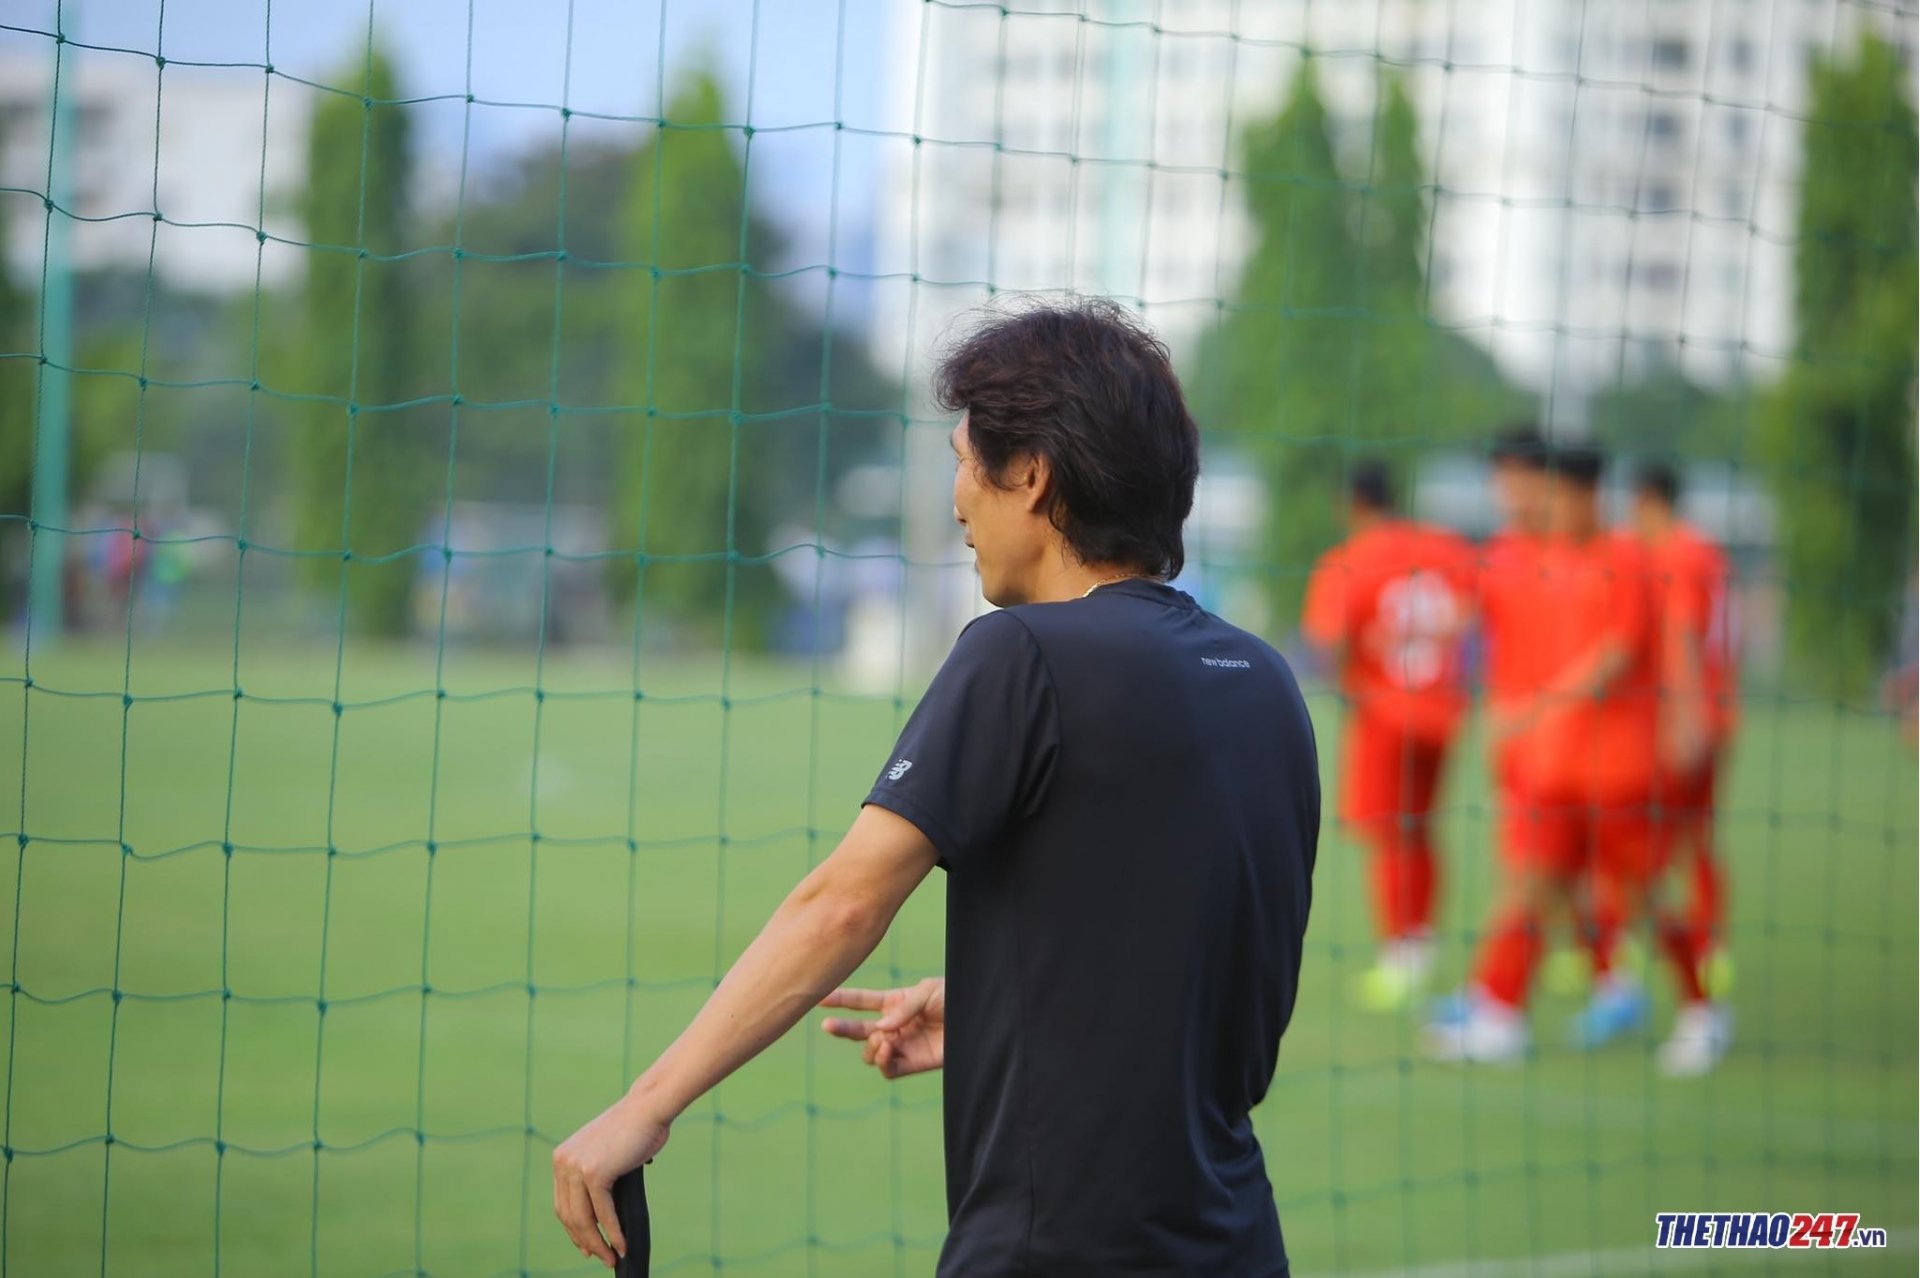 HLV Gong Oh Kyun bất ngờ 'soi giò' U20 Việt Nam trước giải châu Á - Ảnh 2.